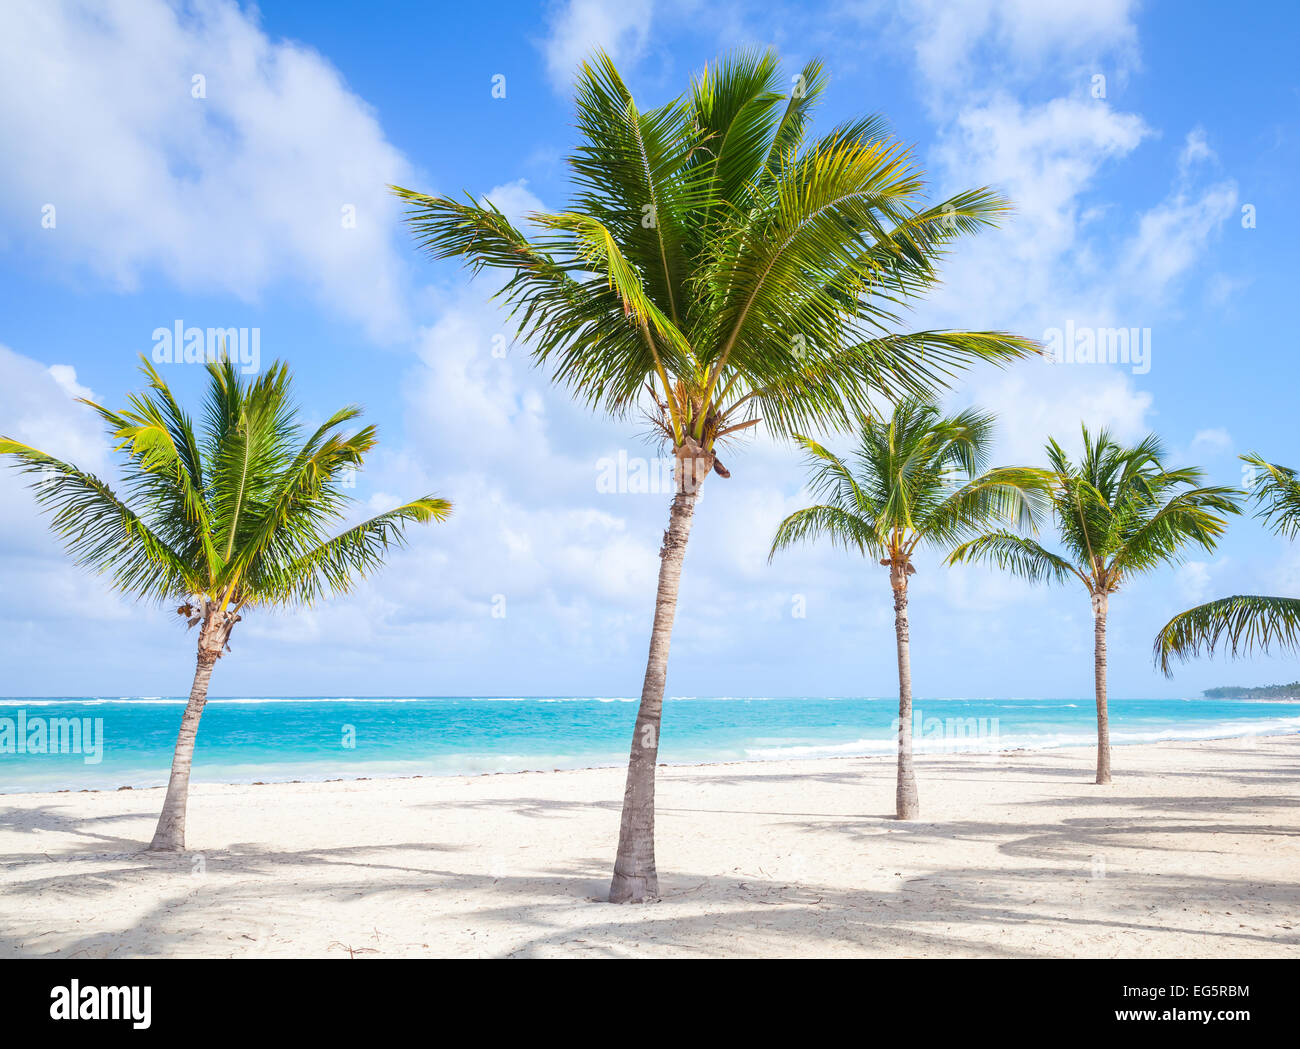 Les palmiers poussent sur une plage de sable vide. Côte de l'océan Atlantique, la République Dominicaine Banque D'Images